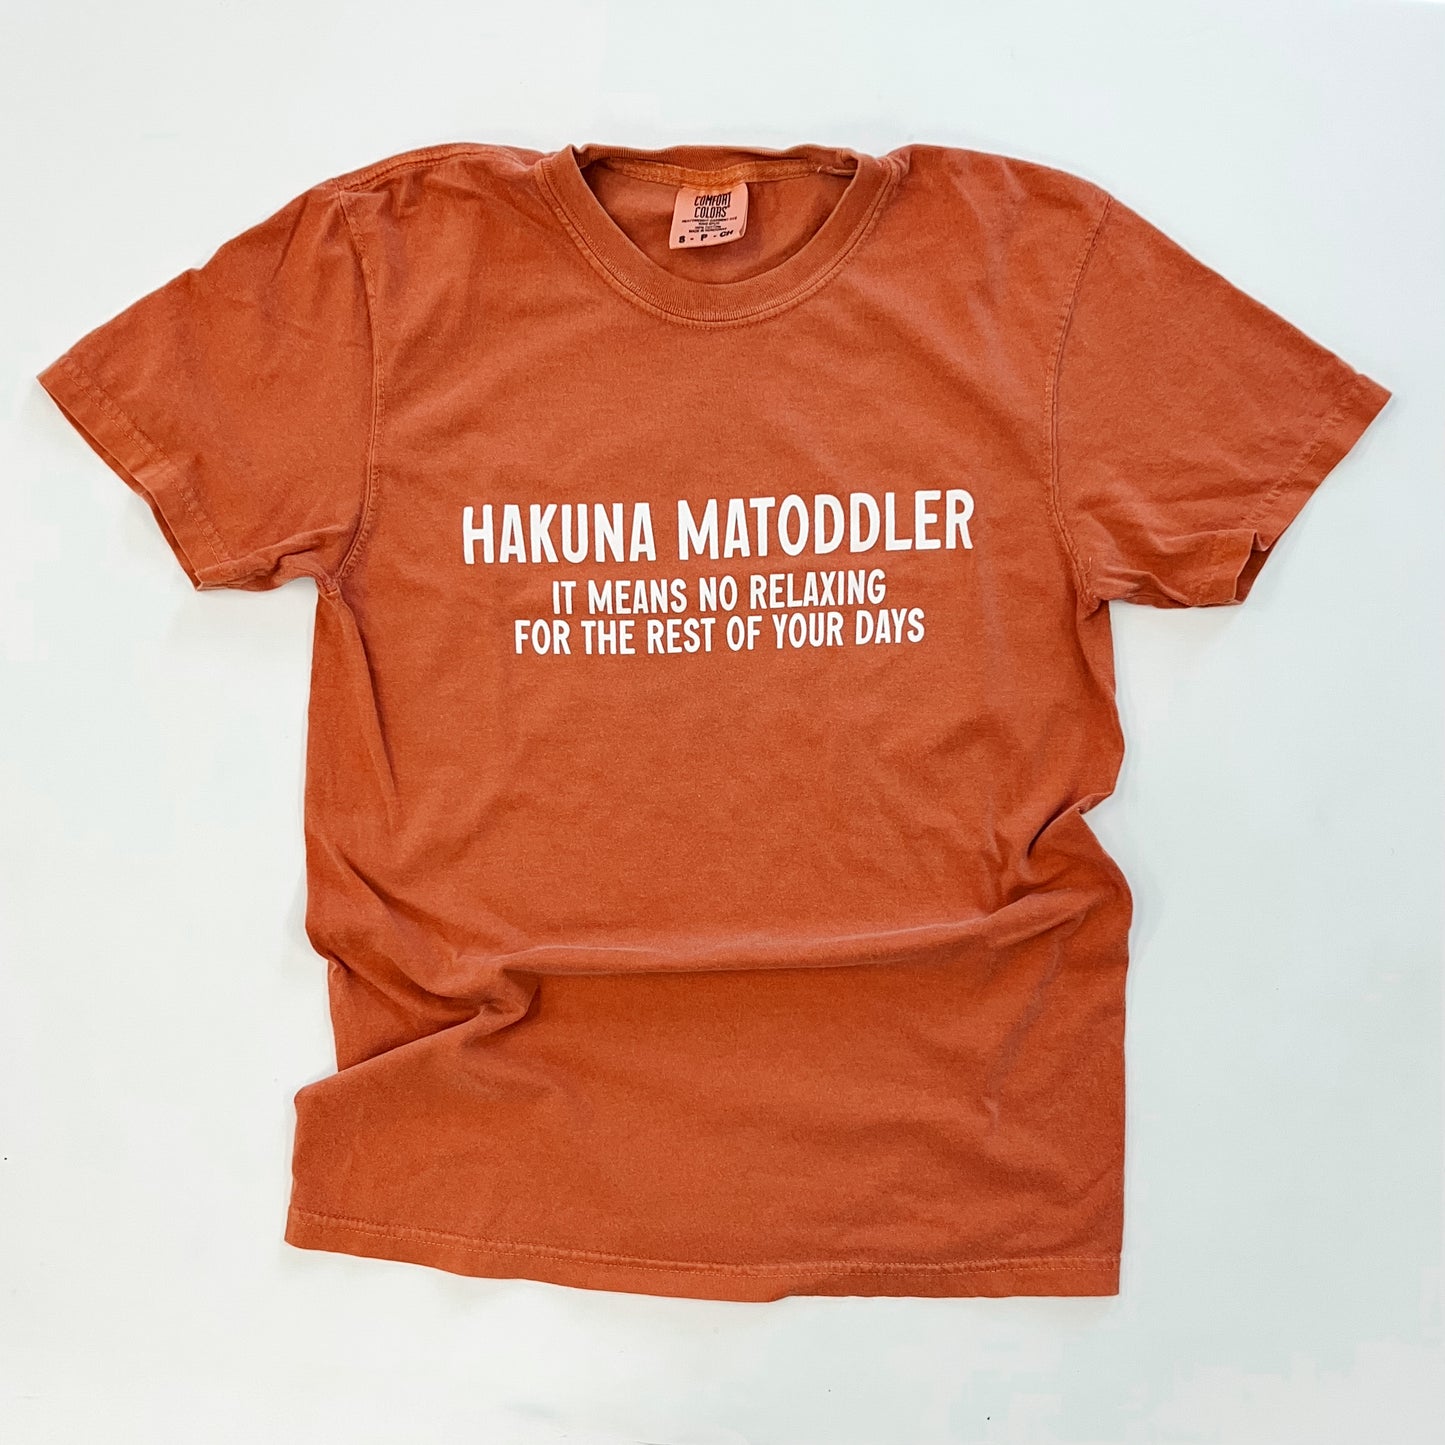 HAKUNA MATODDLER - ADULT COMFORT COLORS